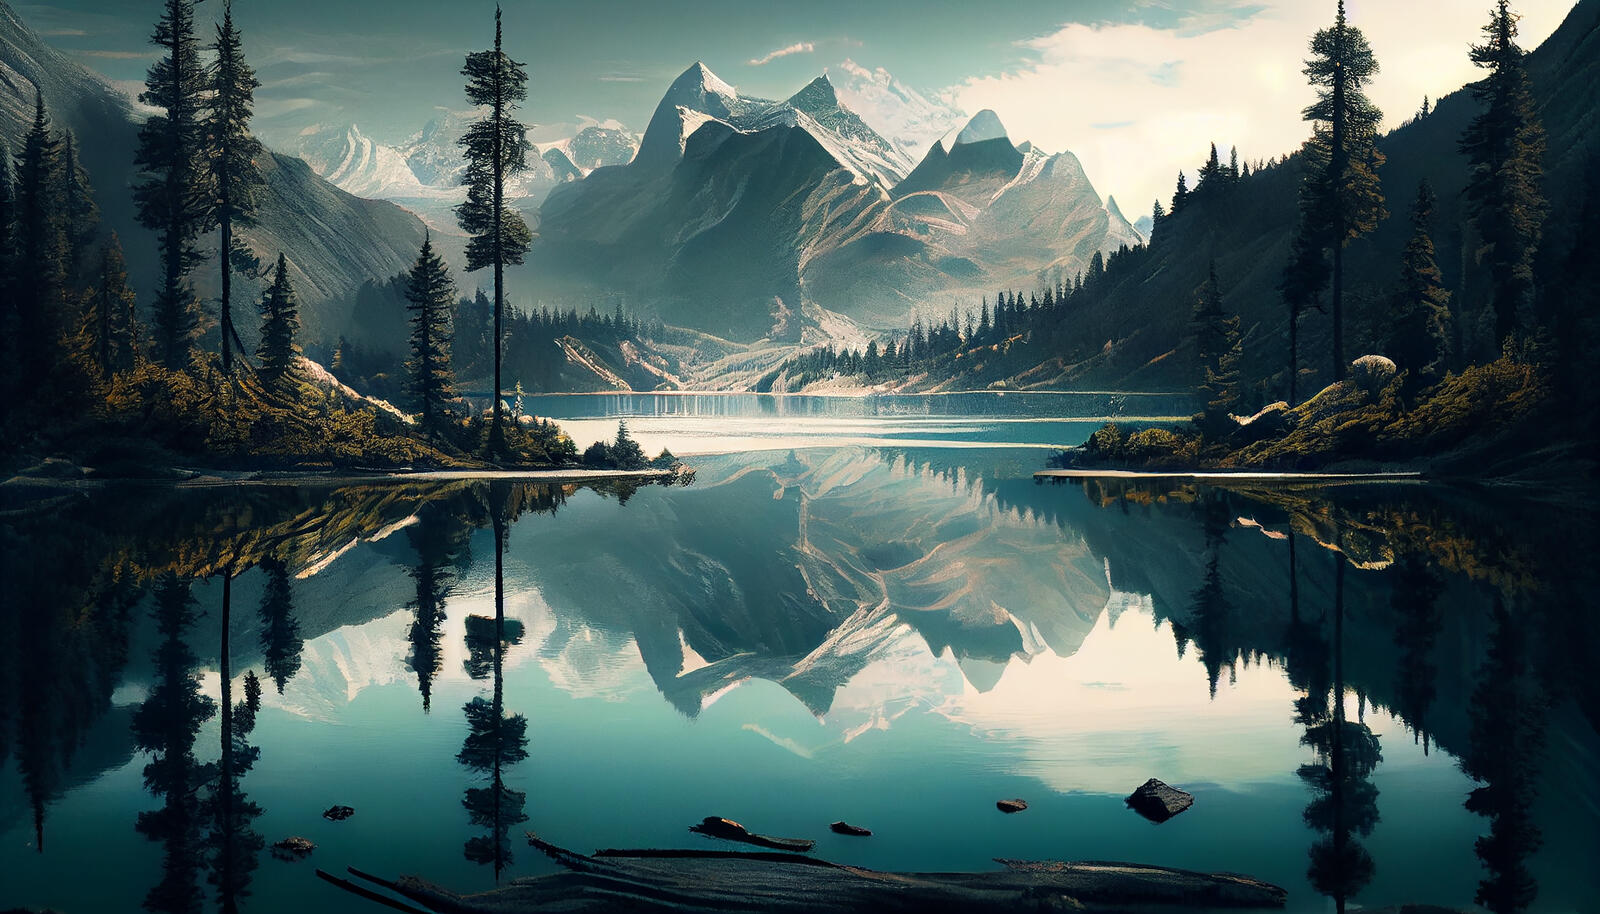 Бесплатное фото Картина с изображением горного озера с горой на заднем плане